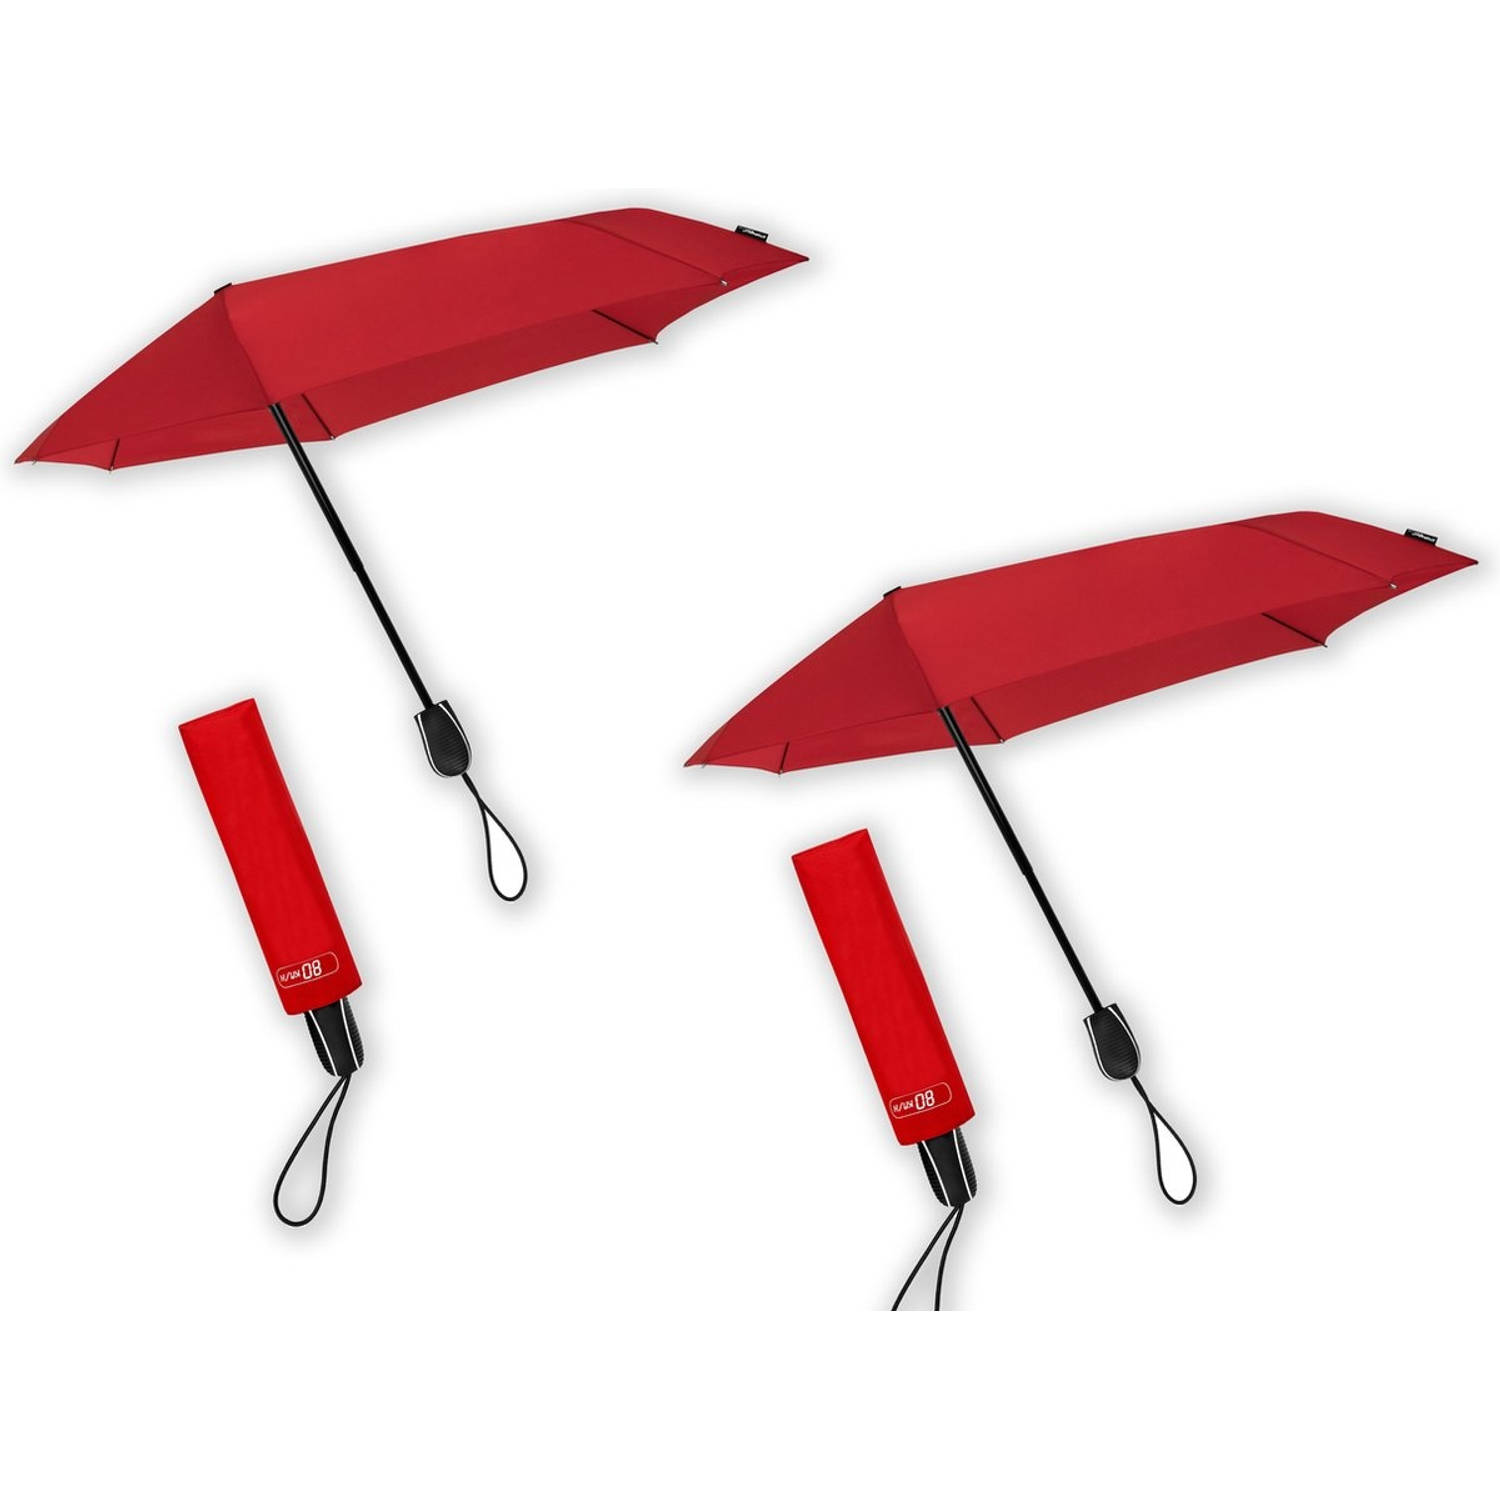 Paraplu tegen storm tot 80 km - 4 stuks verpakking - Stormparaplu geschikt voor Windvlagen tot 80km/h - Ø 100 cm - | Blokker